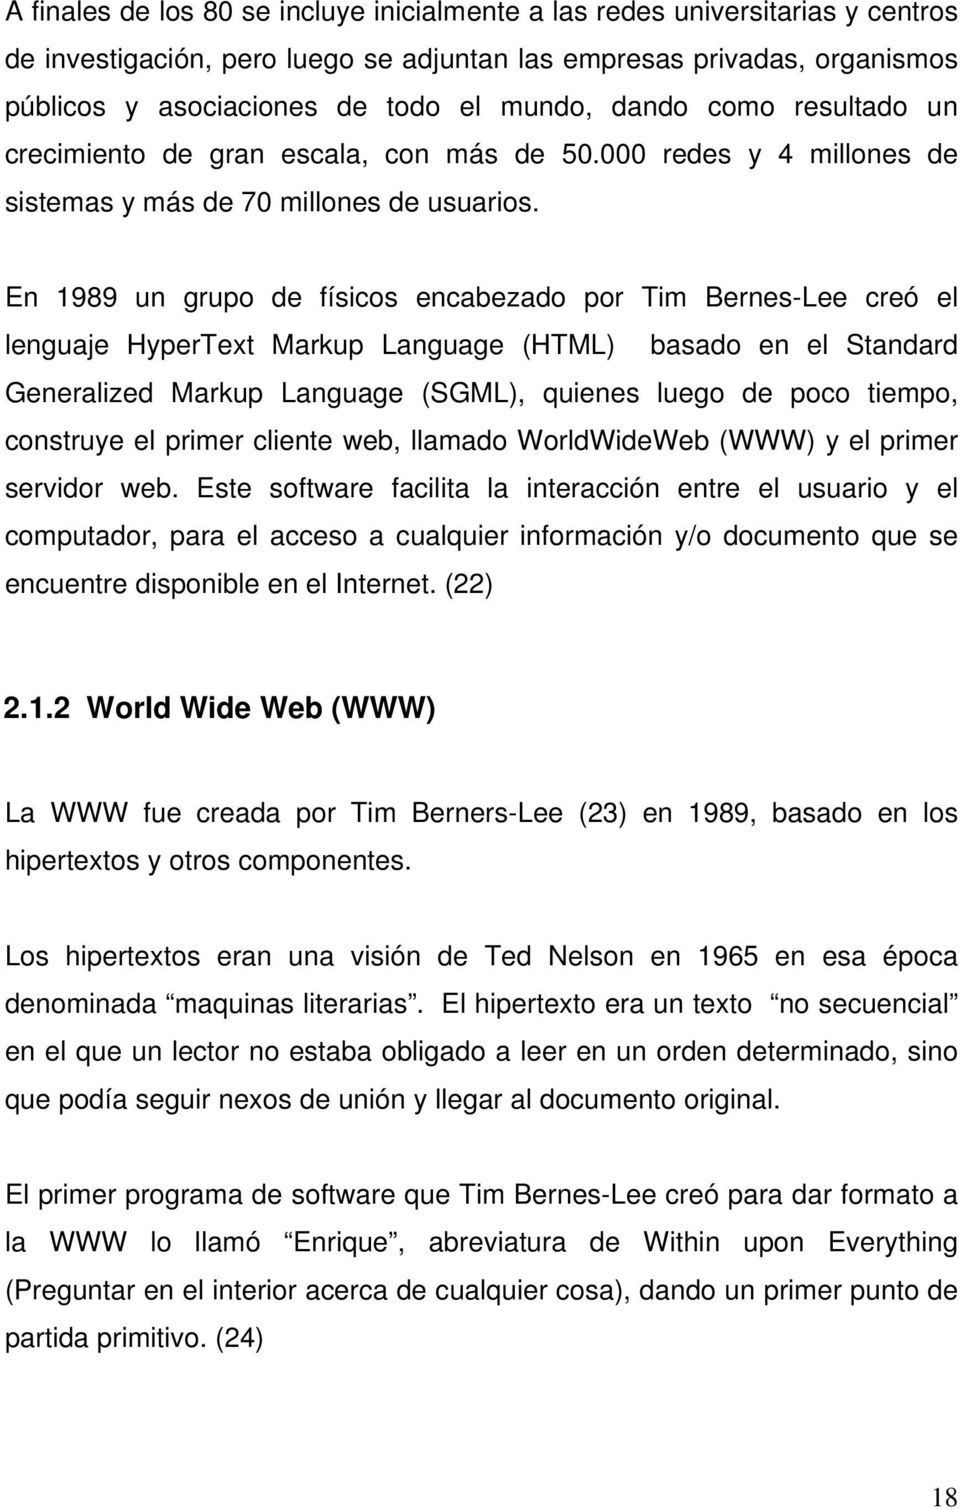 En 1989 un grupo de físicos encabezado por Tim Bernes-Lee creó el lenguaje HyperText Markup Language (HTML) basado en el Standard Generalized Markup Language (SGML), quienes luego de poco tiempo,